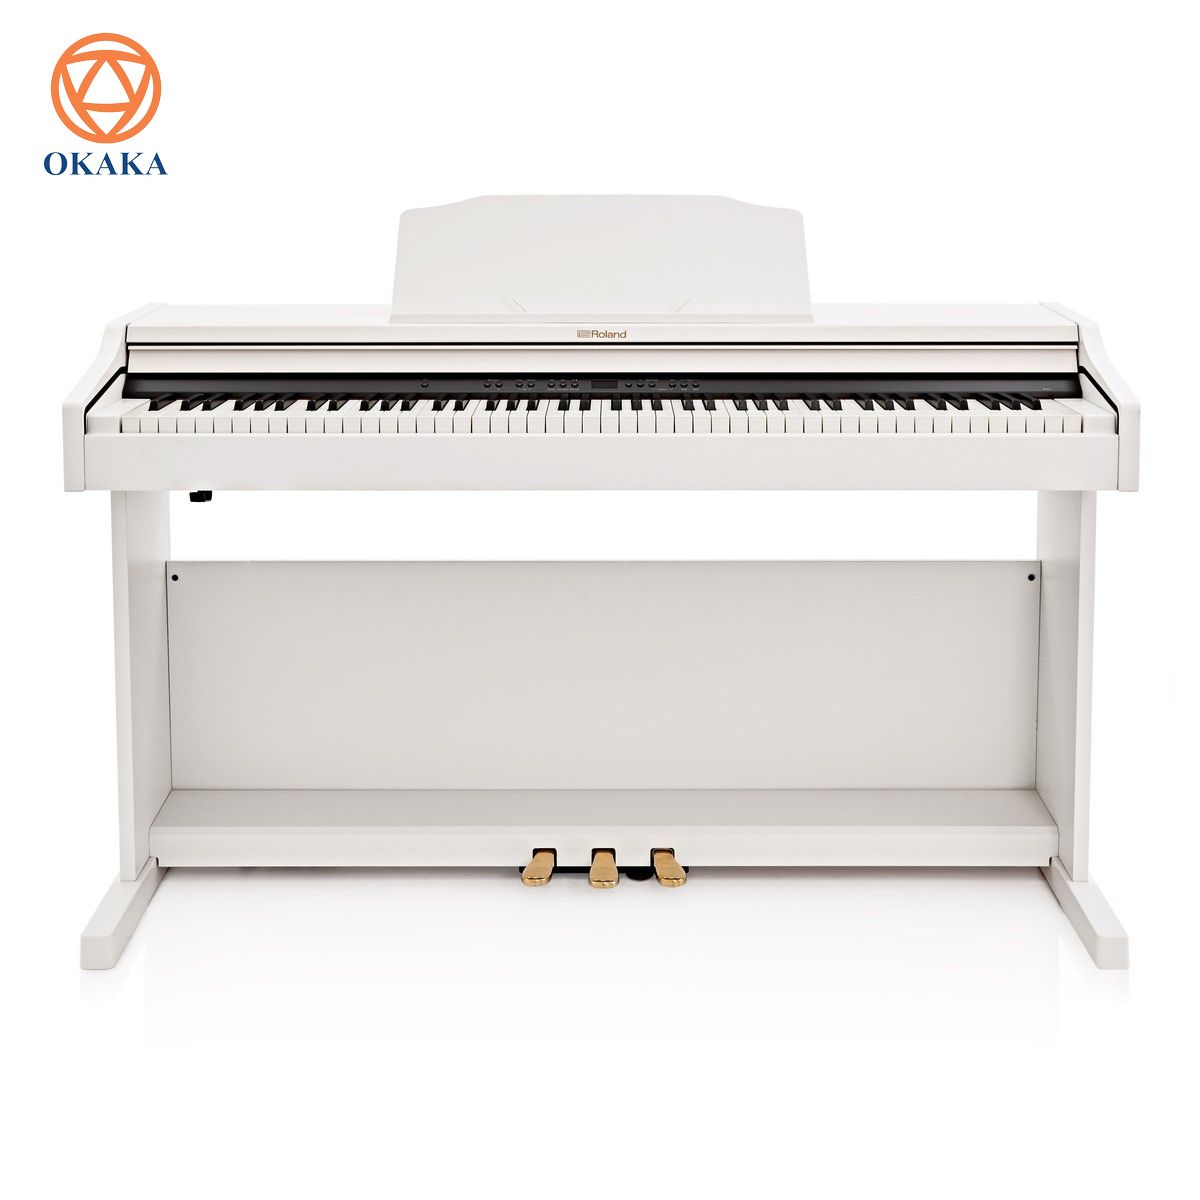 Đàn piano điện Roland RP-501R với hai màu đen trắng để bạn chọn cung cấp rất nhiều tính năng vượt trội, mang lại âm thanh tuyệt vời ở một mức giá rất hợp lý. Cùng OKAKA điểm danh xem model này có gì hấp dẫn bằng cách đọc bài review đàn piano điện Roland RP-501R sau nhé!